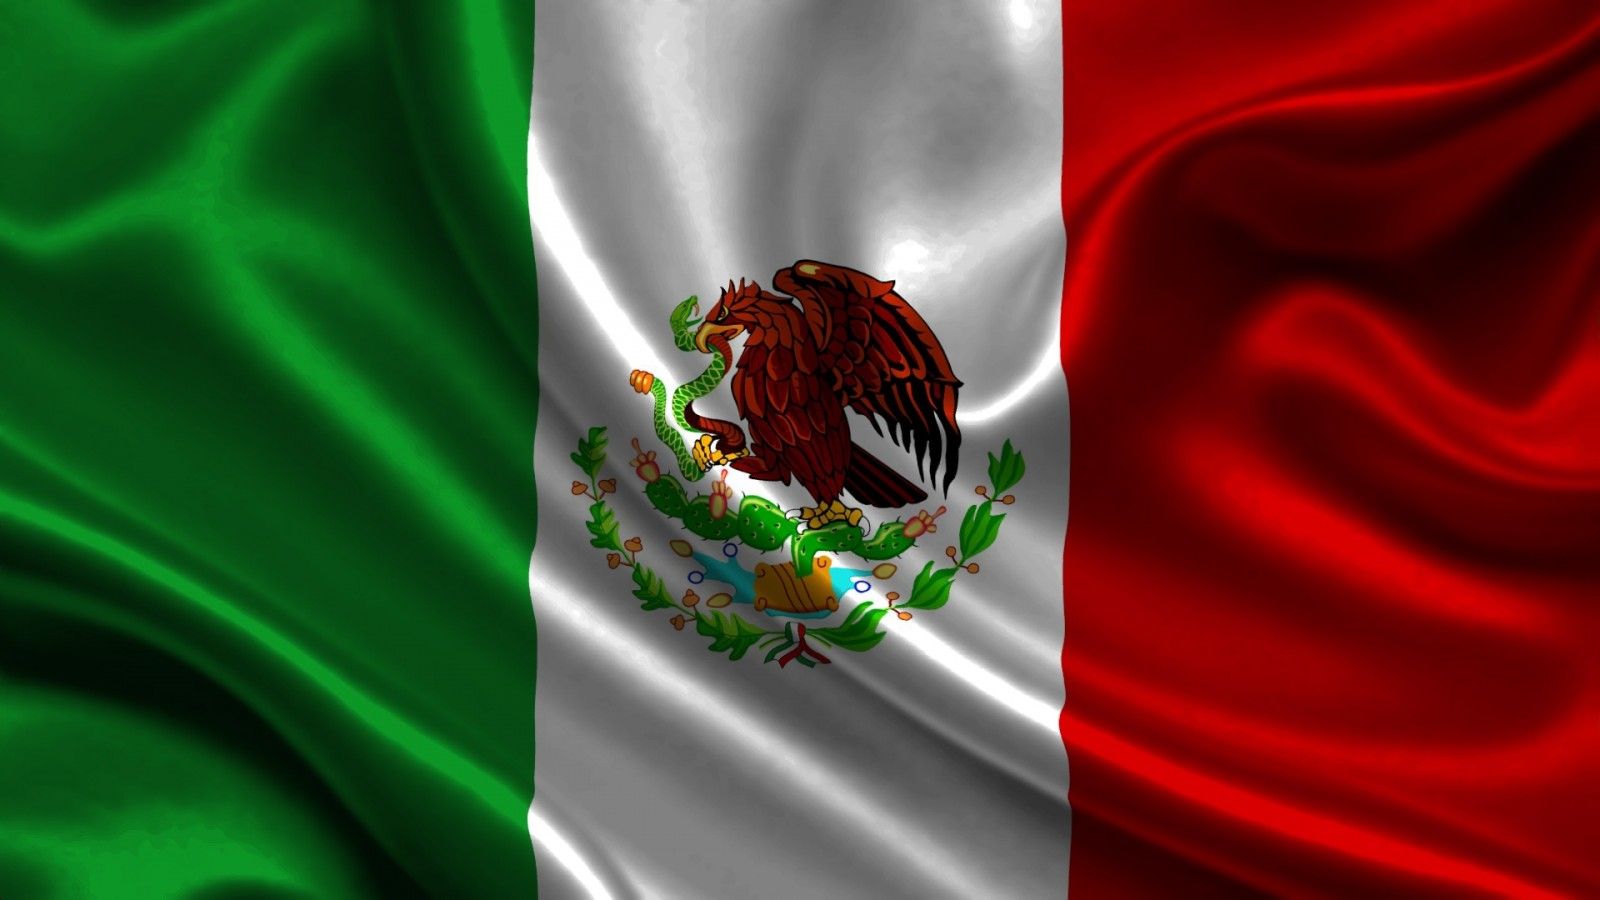 Wallpaper, illustration, red, green, flag, Mexico, color, Atlas, symbol, emblem, screenshot, computer wallpaper, organ, macro photography 1920x1080